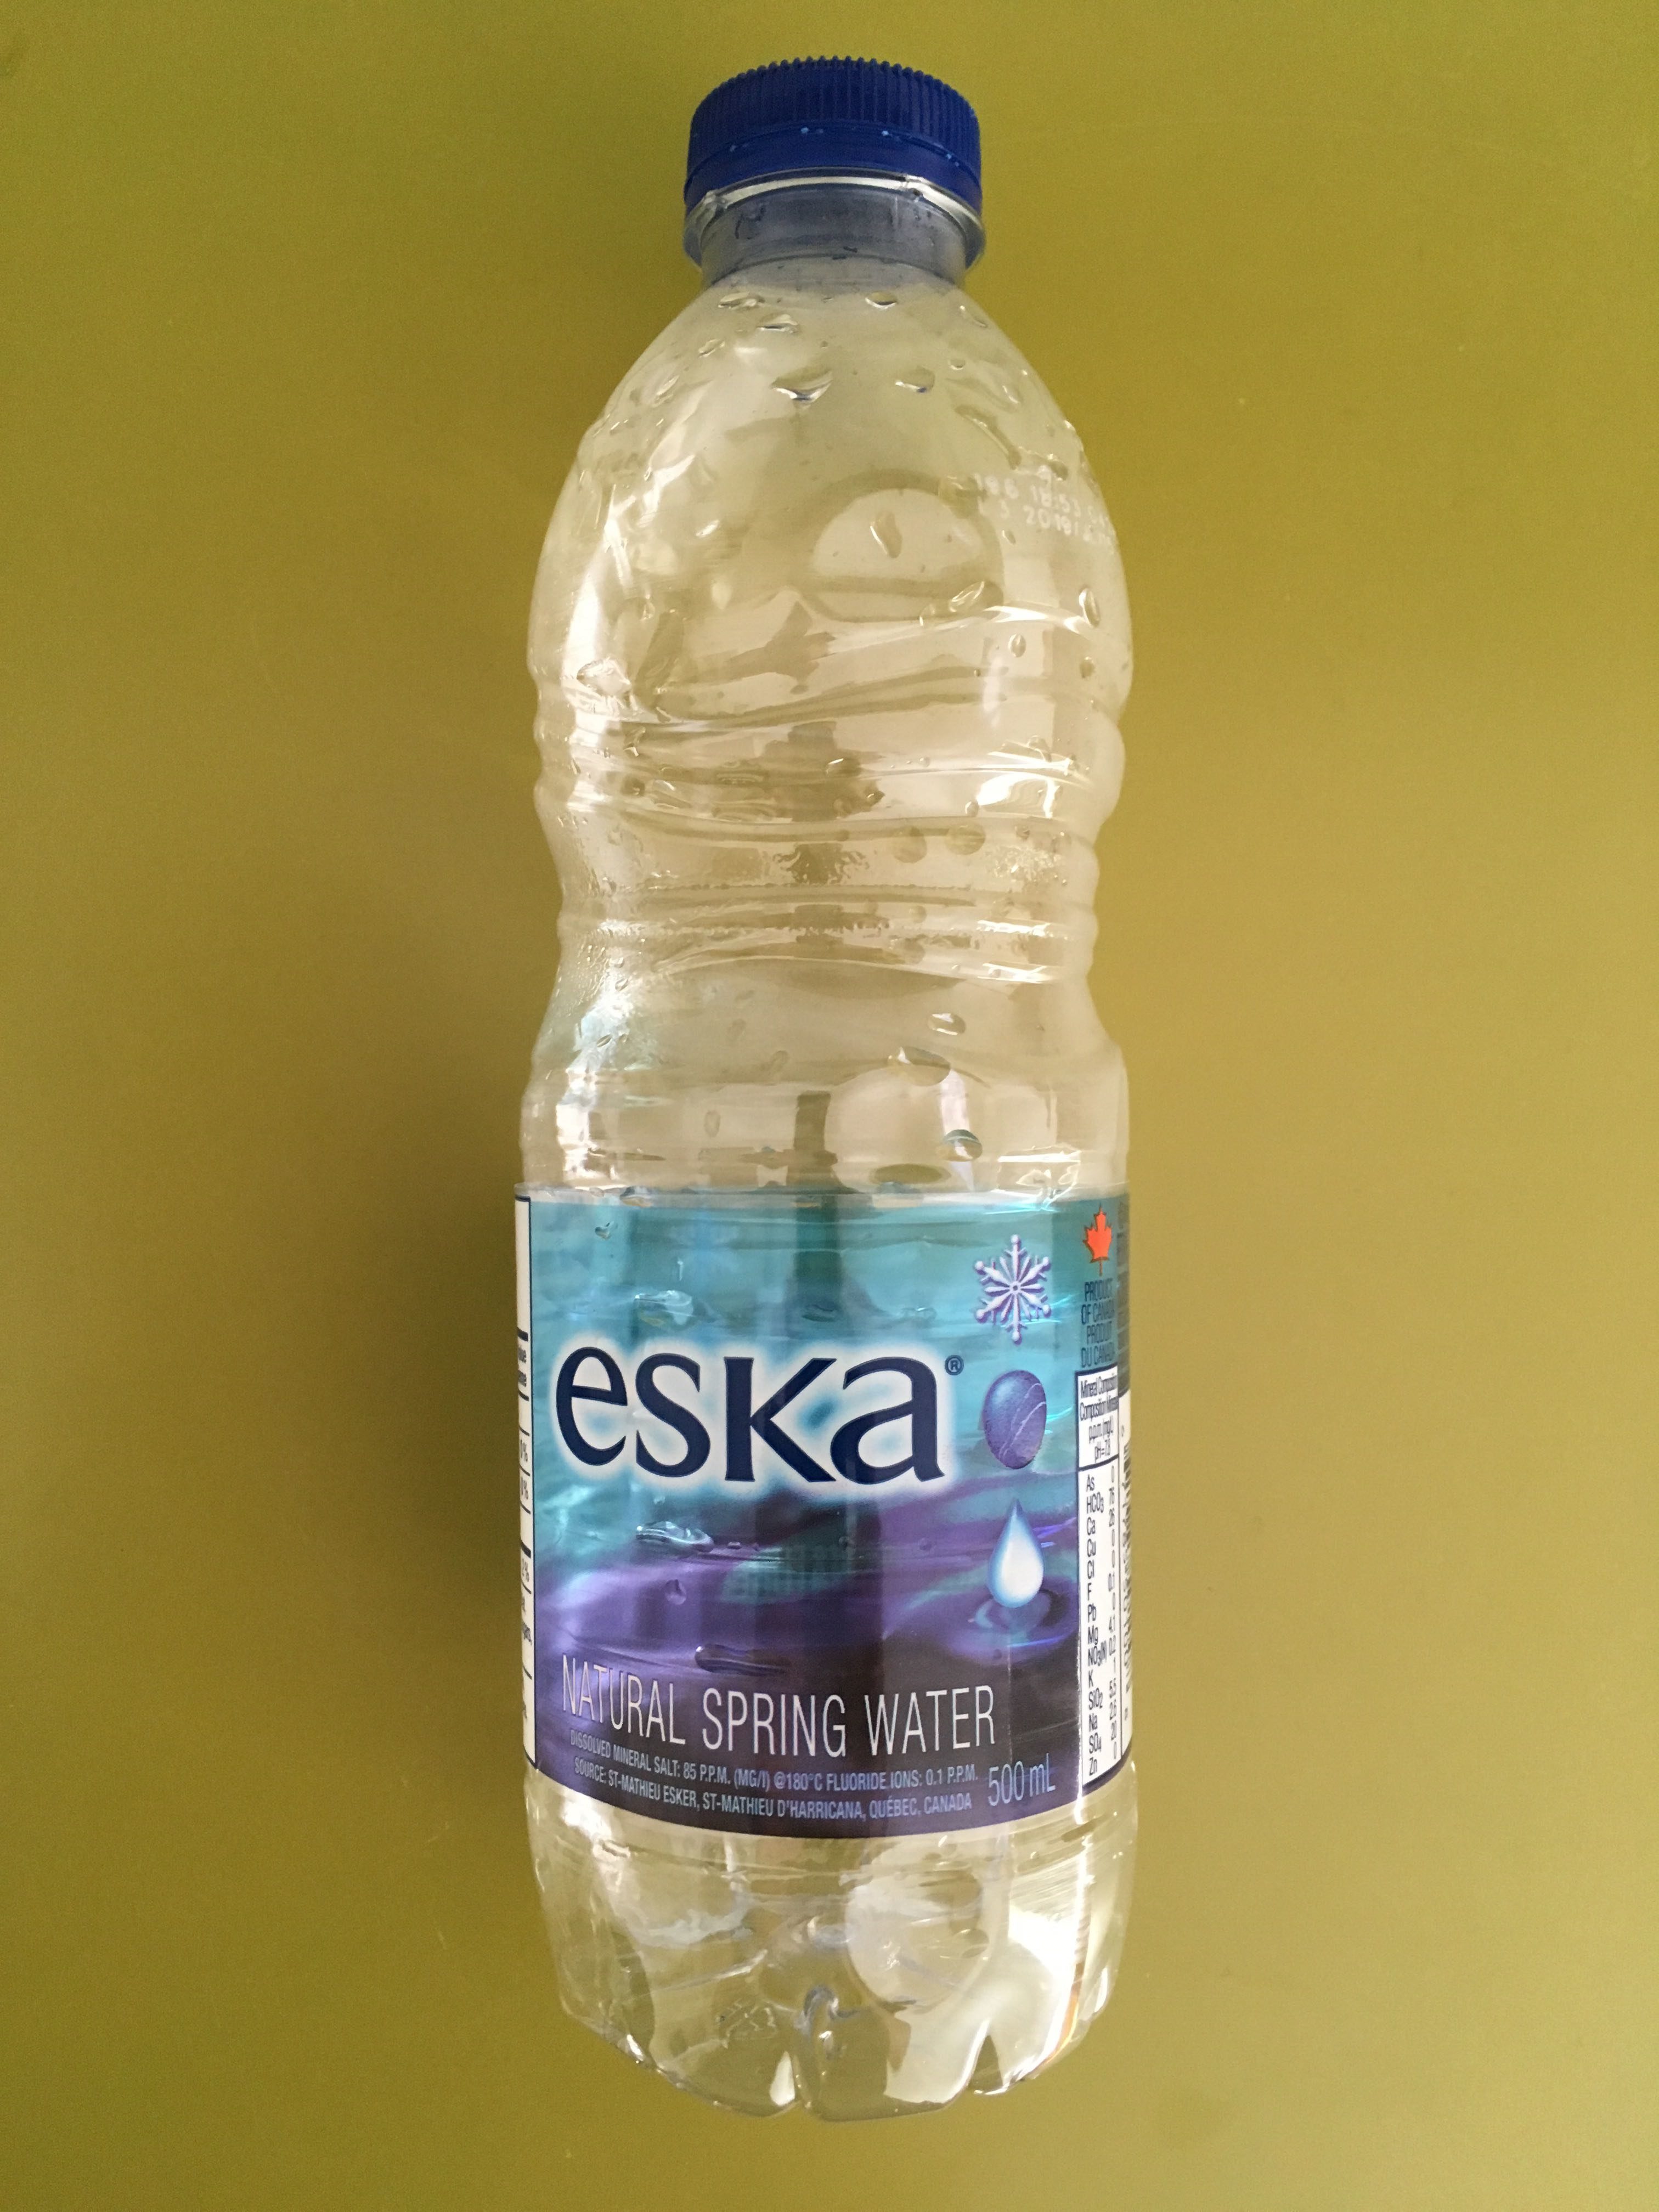 Eska Eau de source naturelle - Product - en